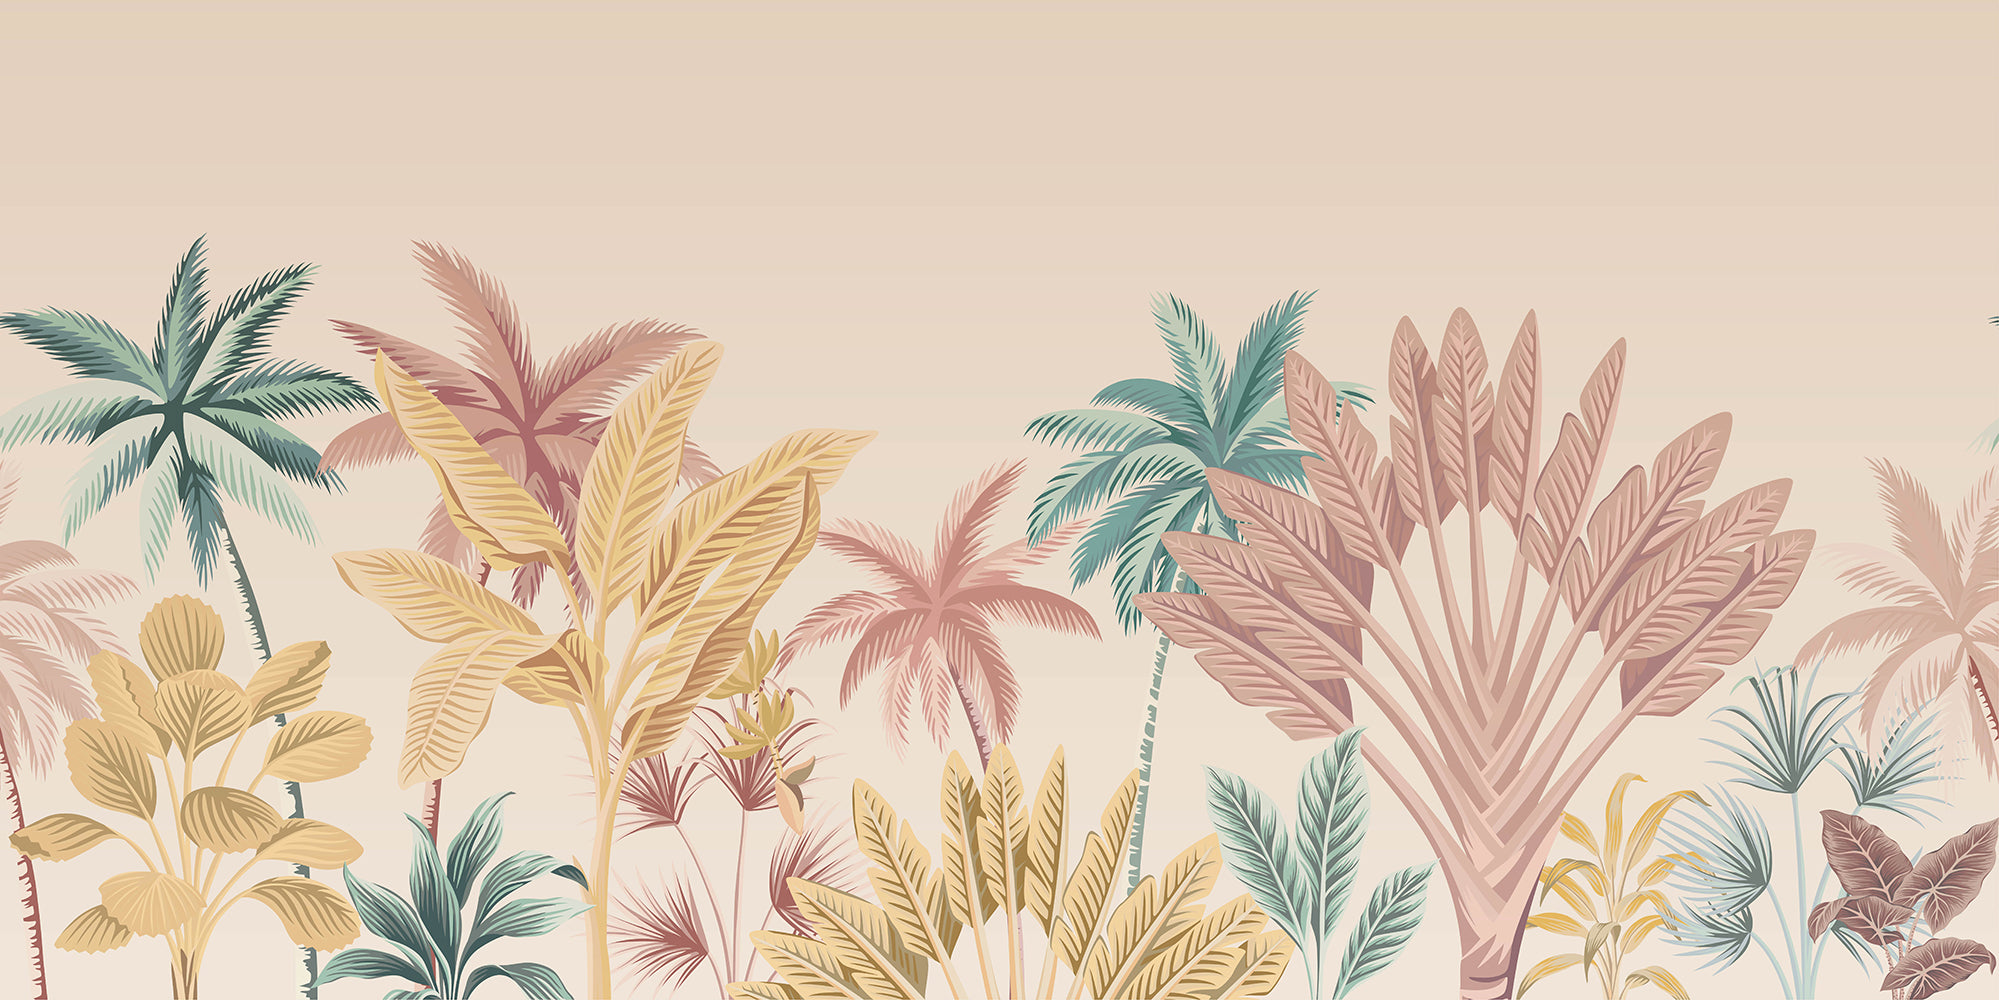 Concure Temida - Mural de papel pintado de árboles tropicales de colores